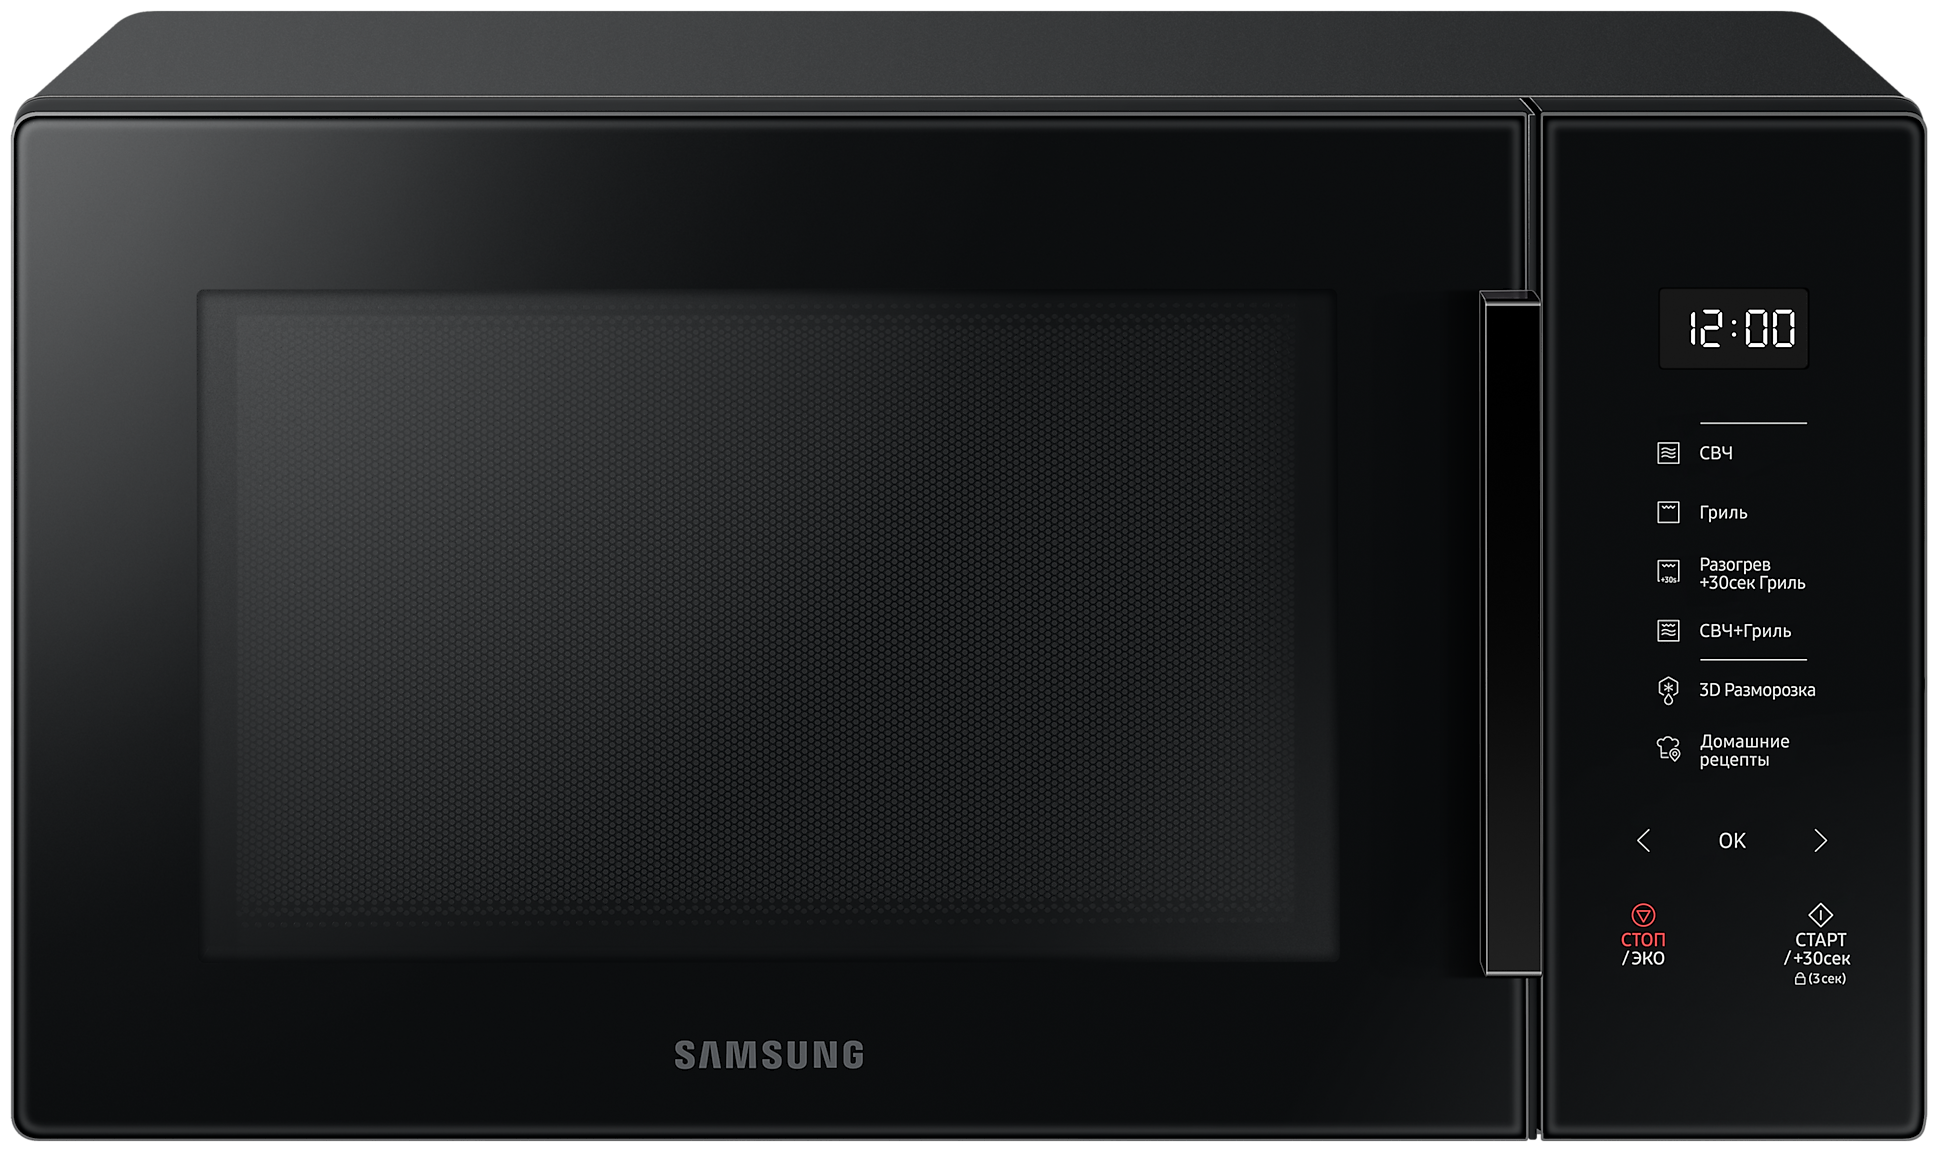 Микроволновая печь Samsung MG30T5018, элегантный черный